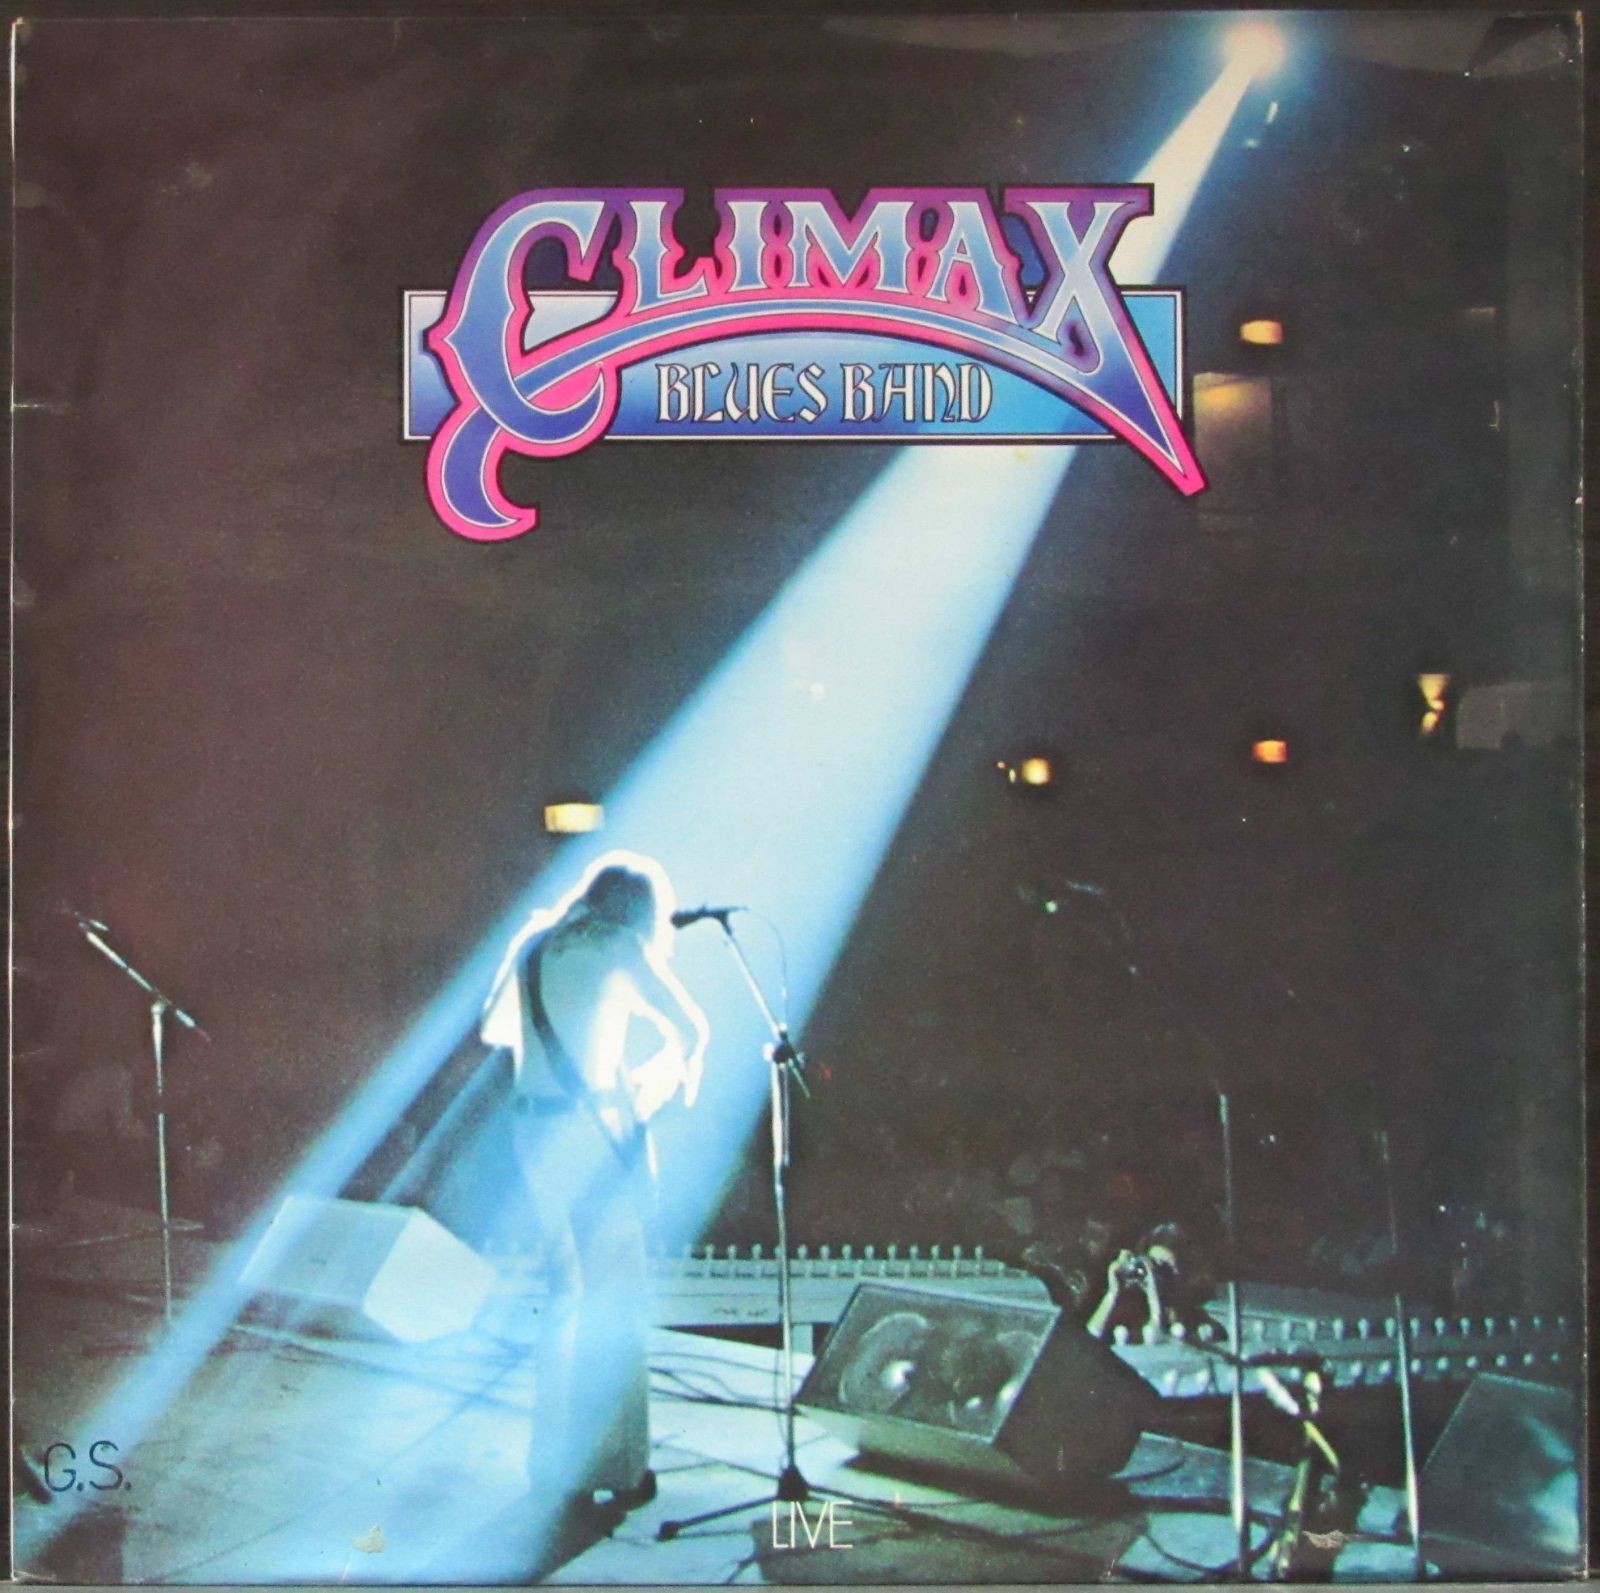 Доклад по теме Climax Blues Band